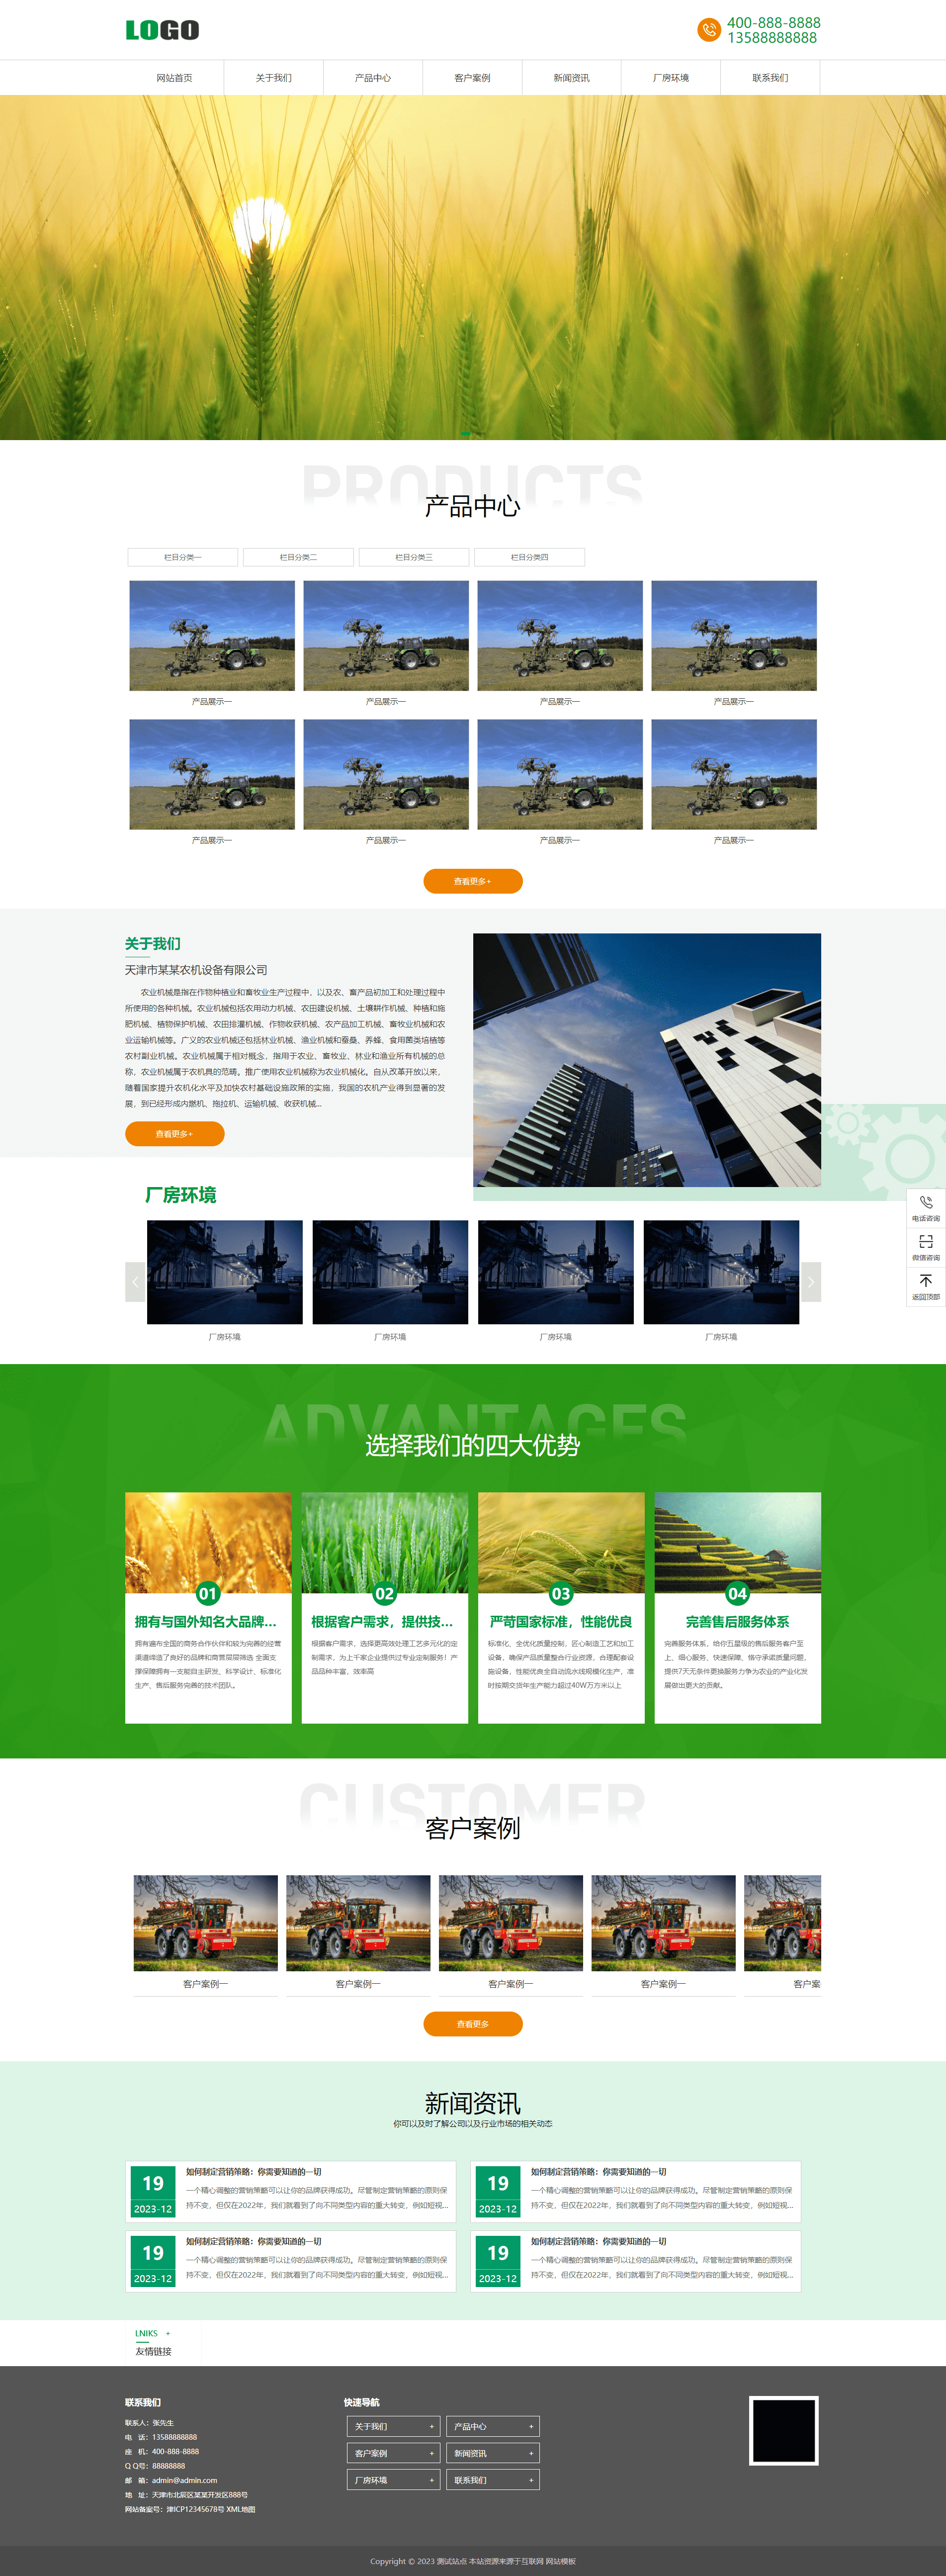 Pbootcms响应式农业机械设备网站源码